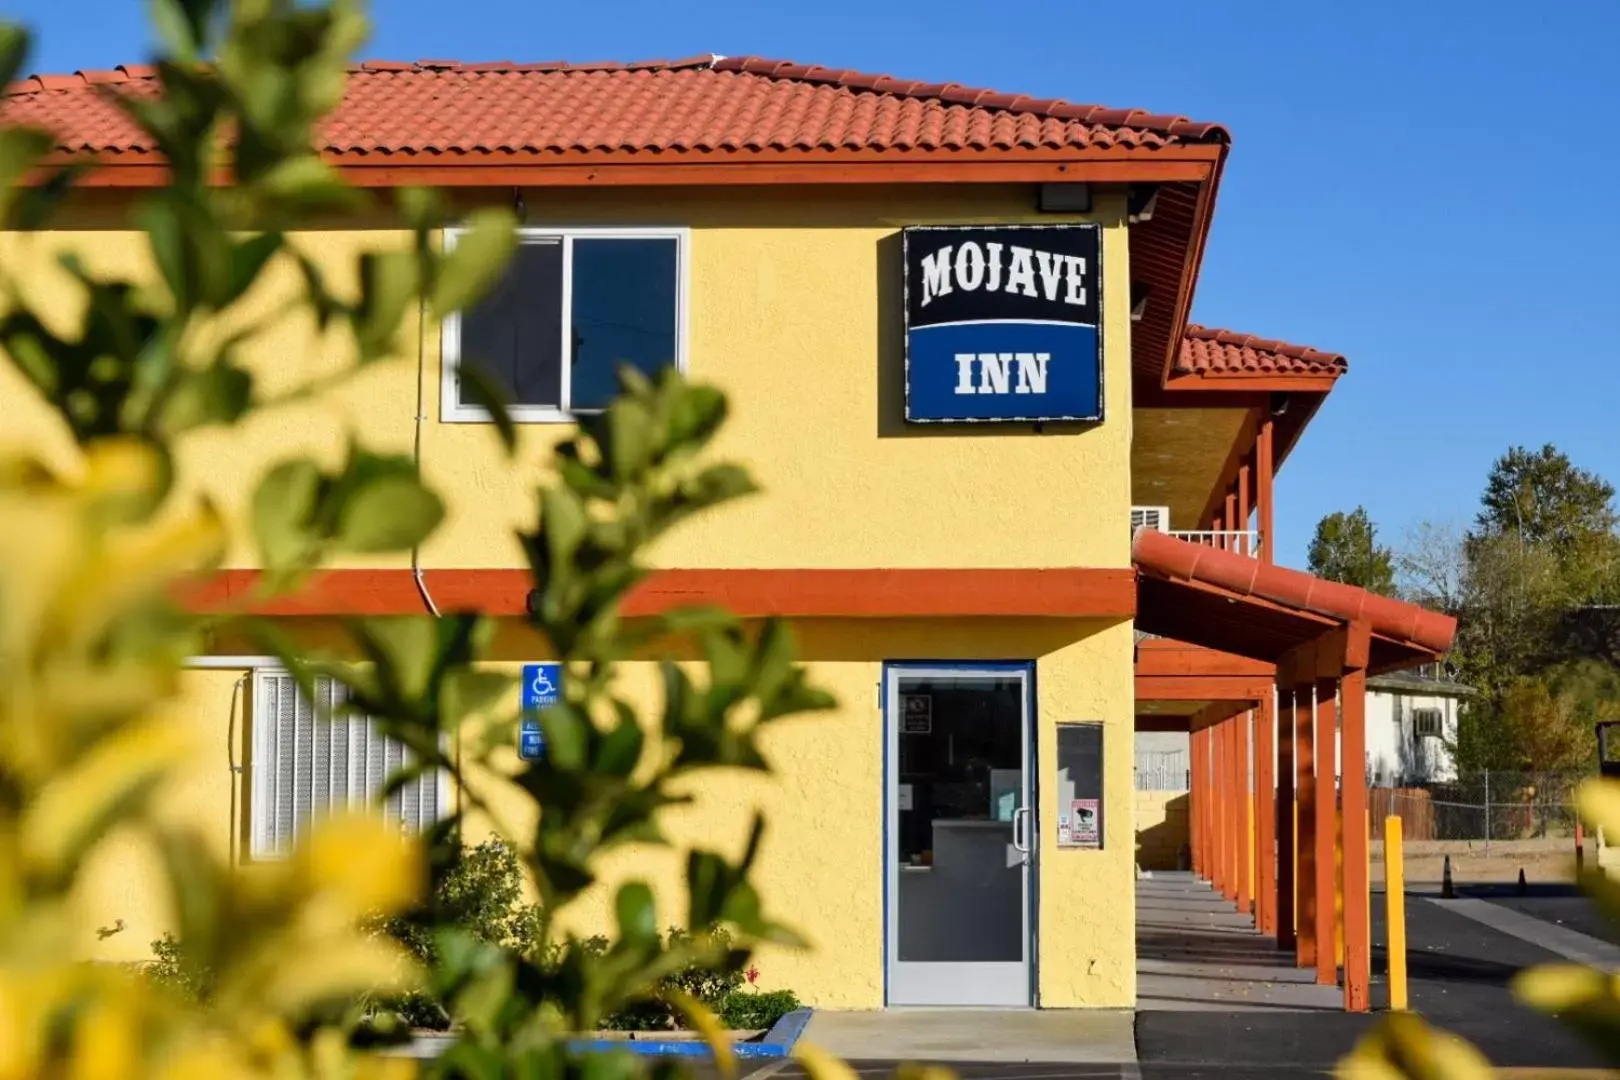 Property Building in Mojave Inn